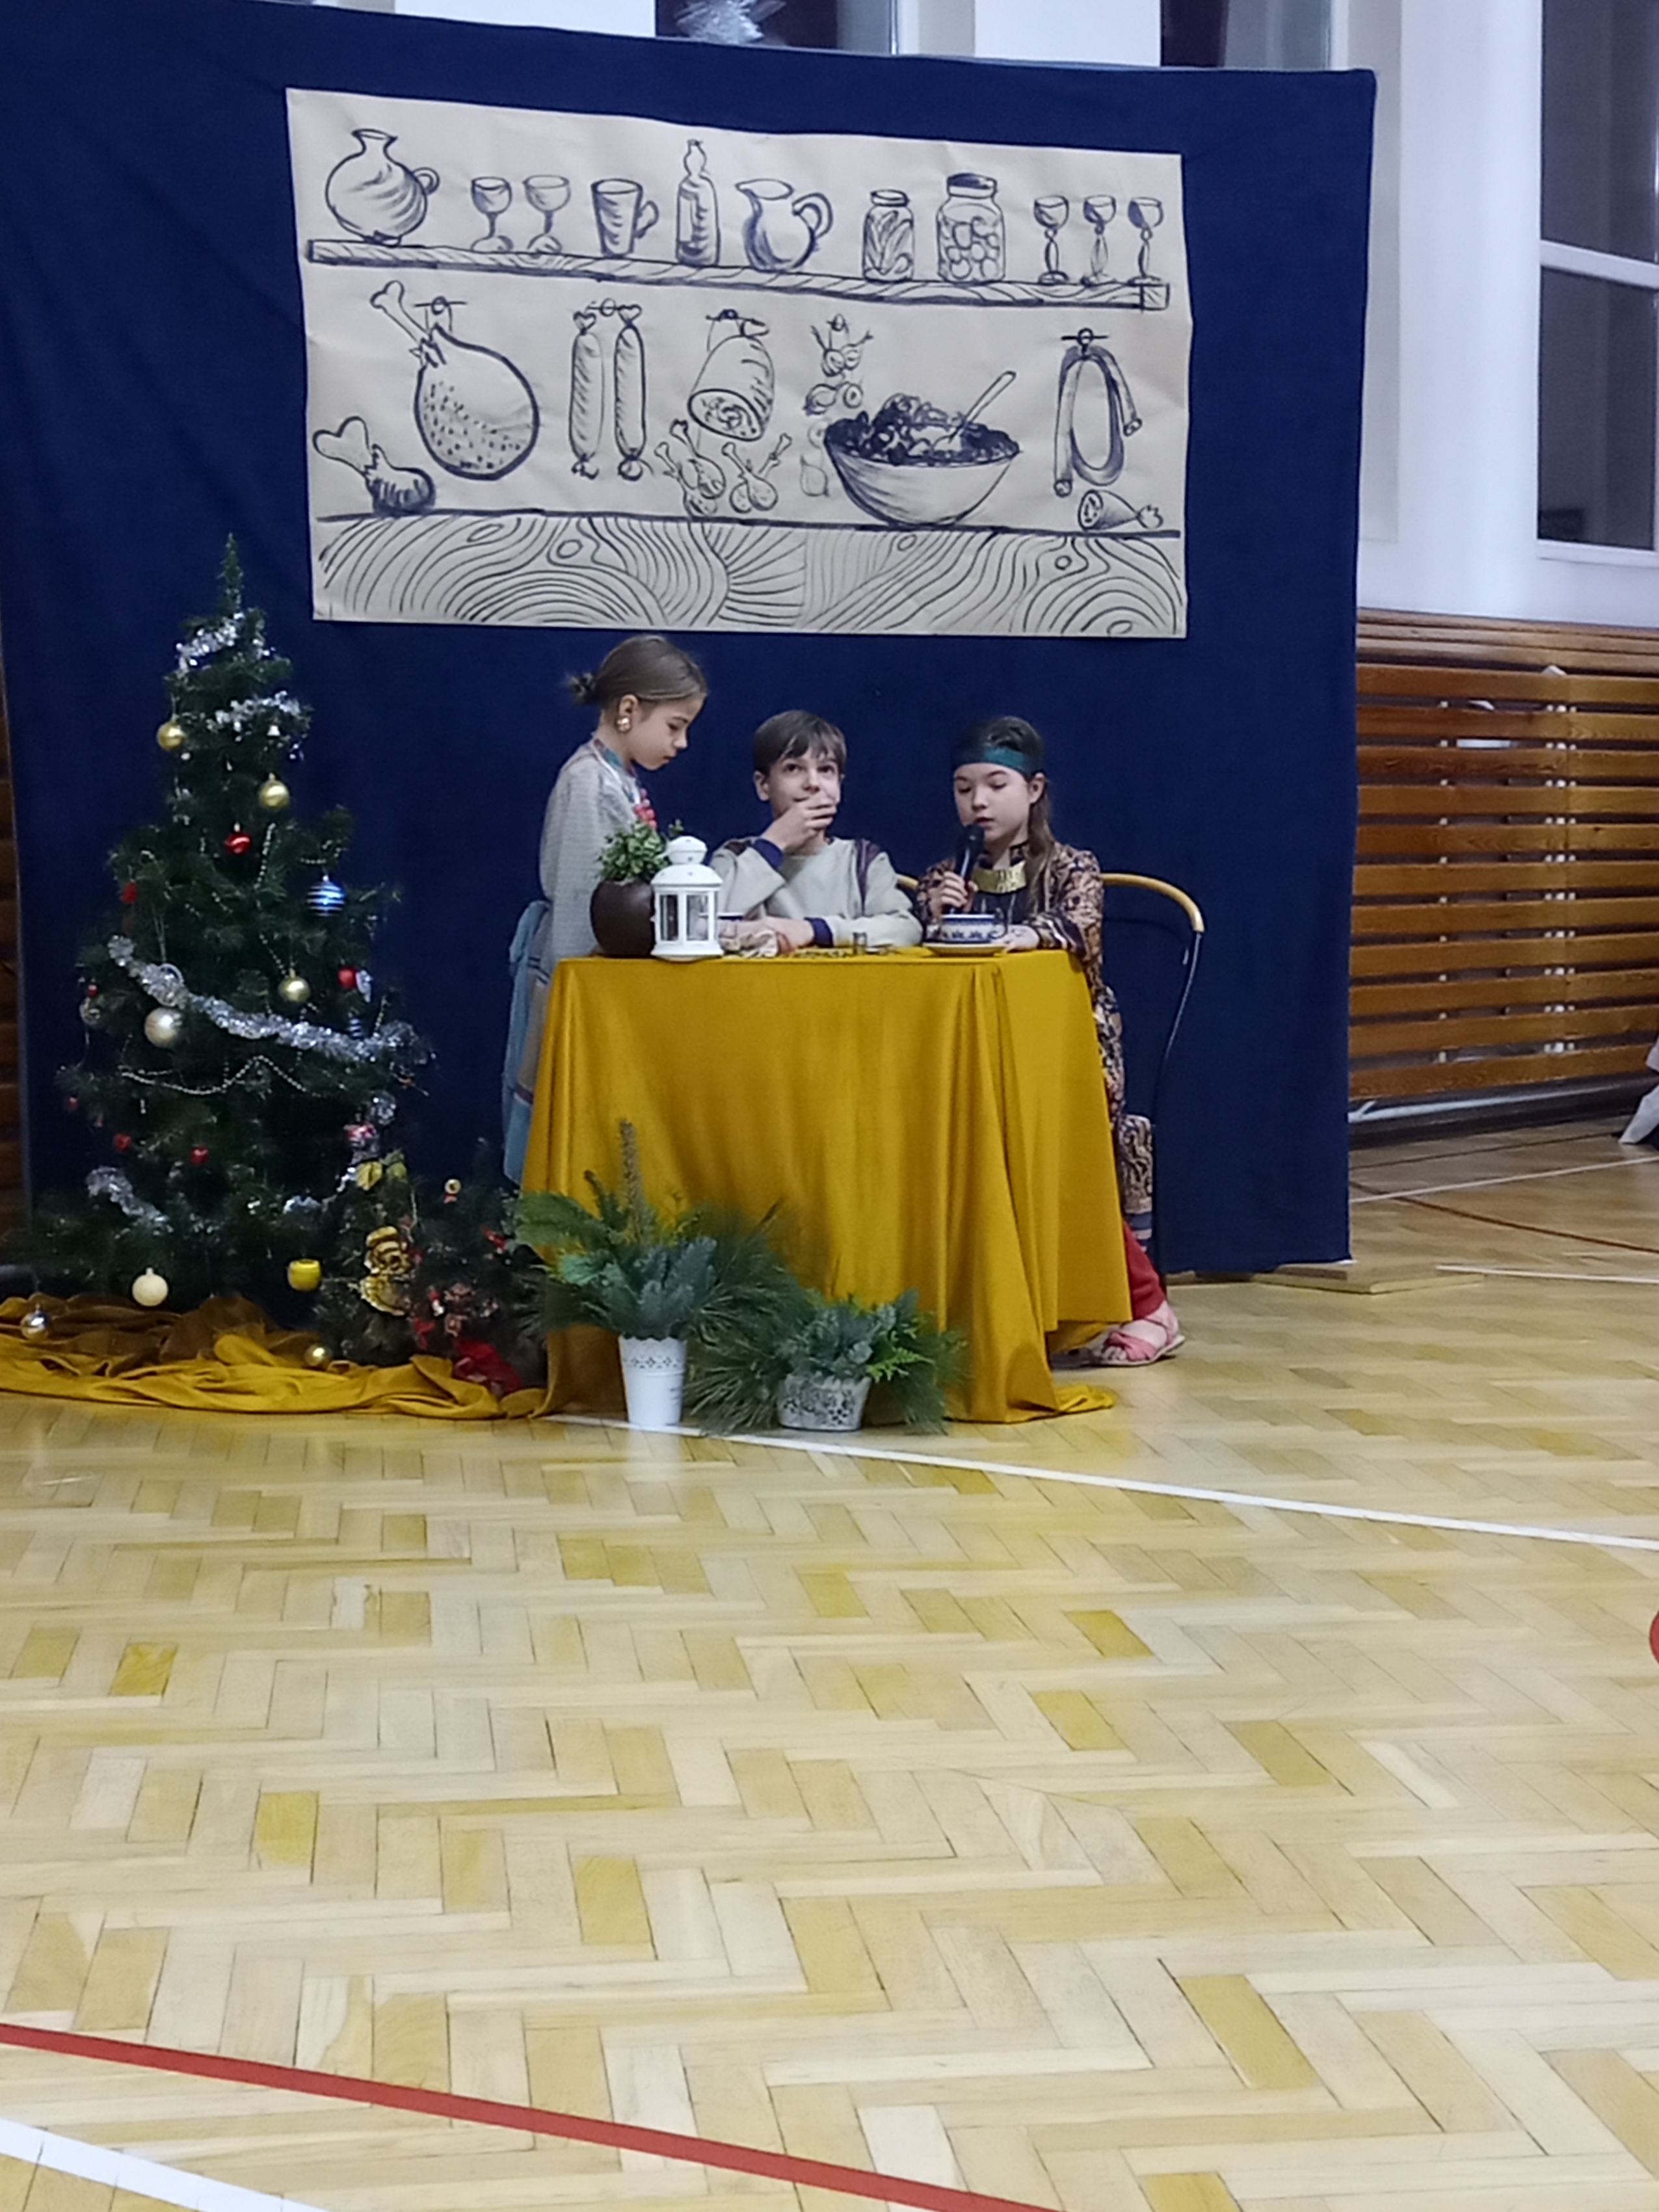 Troju dzieci siedzi przy stoliku.